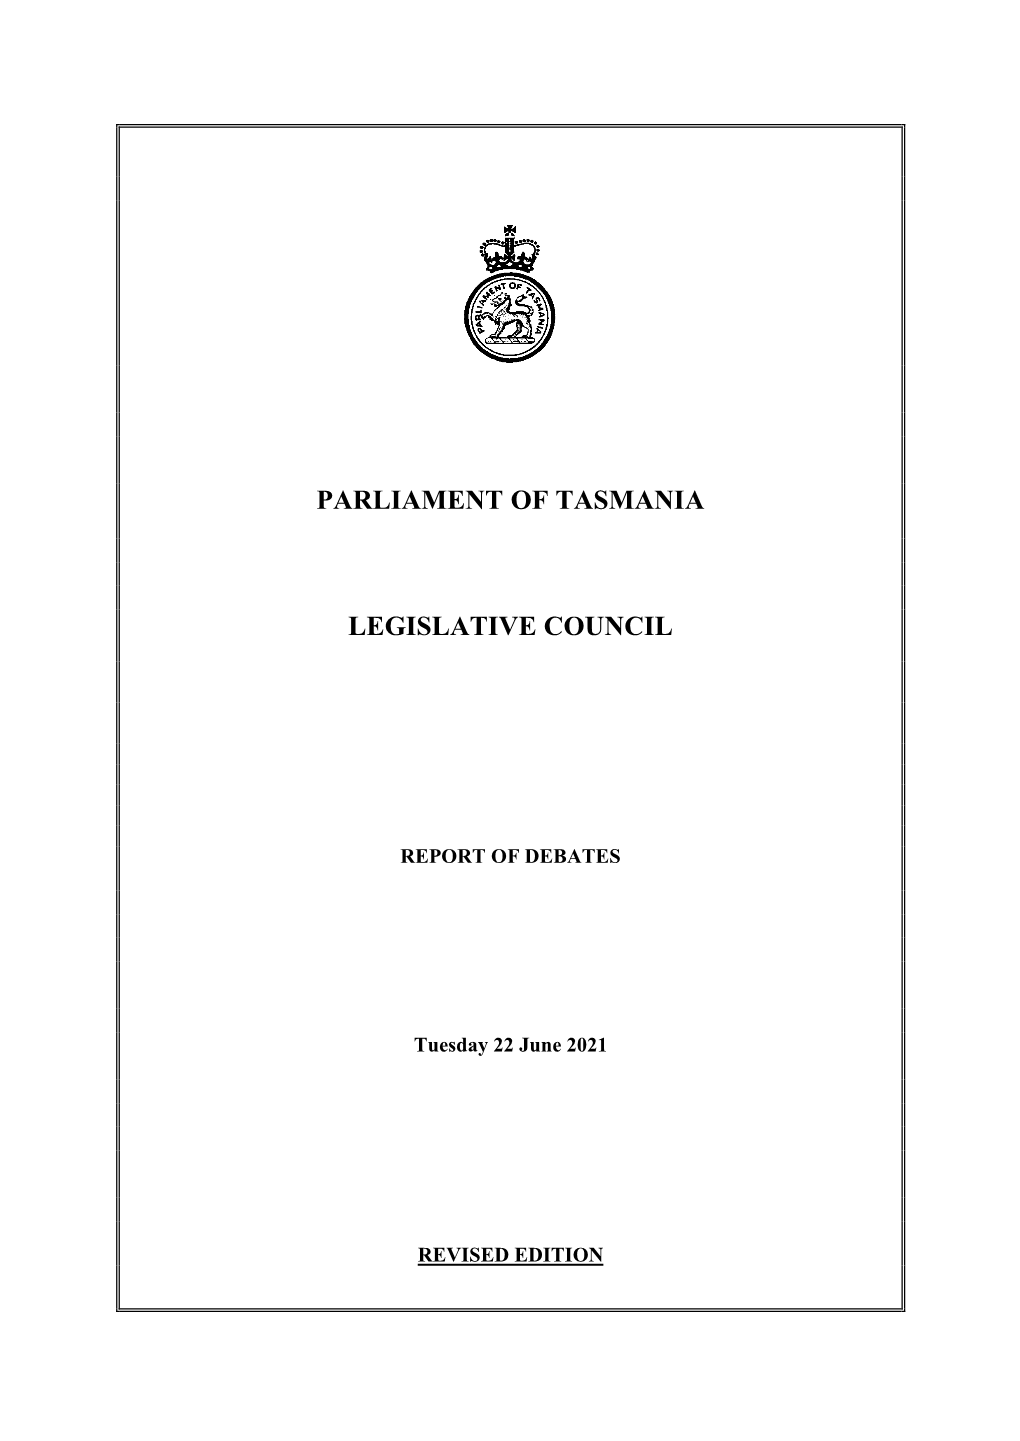 Legislative Council Tuesday 22 June 2021